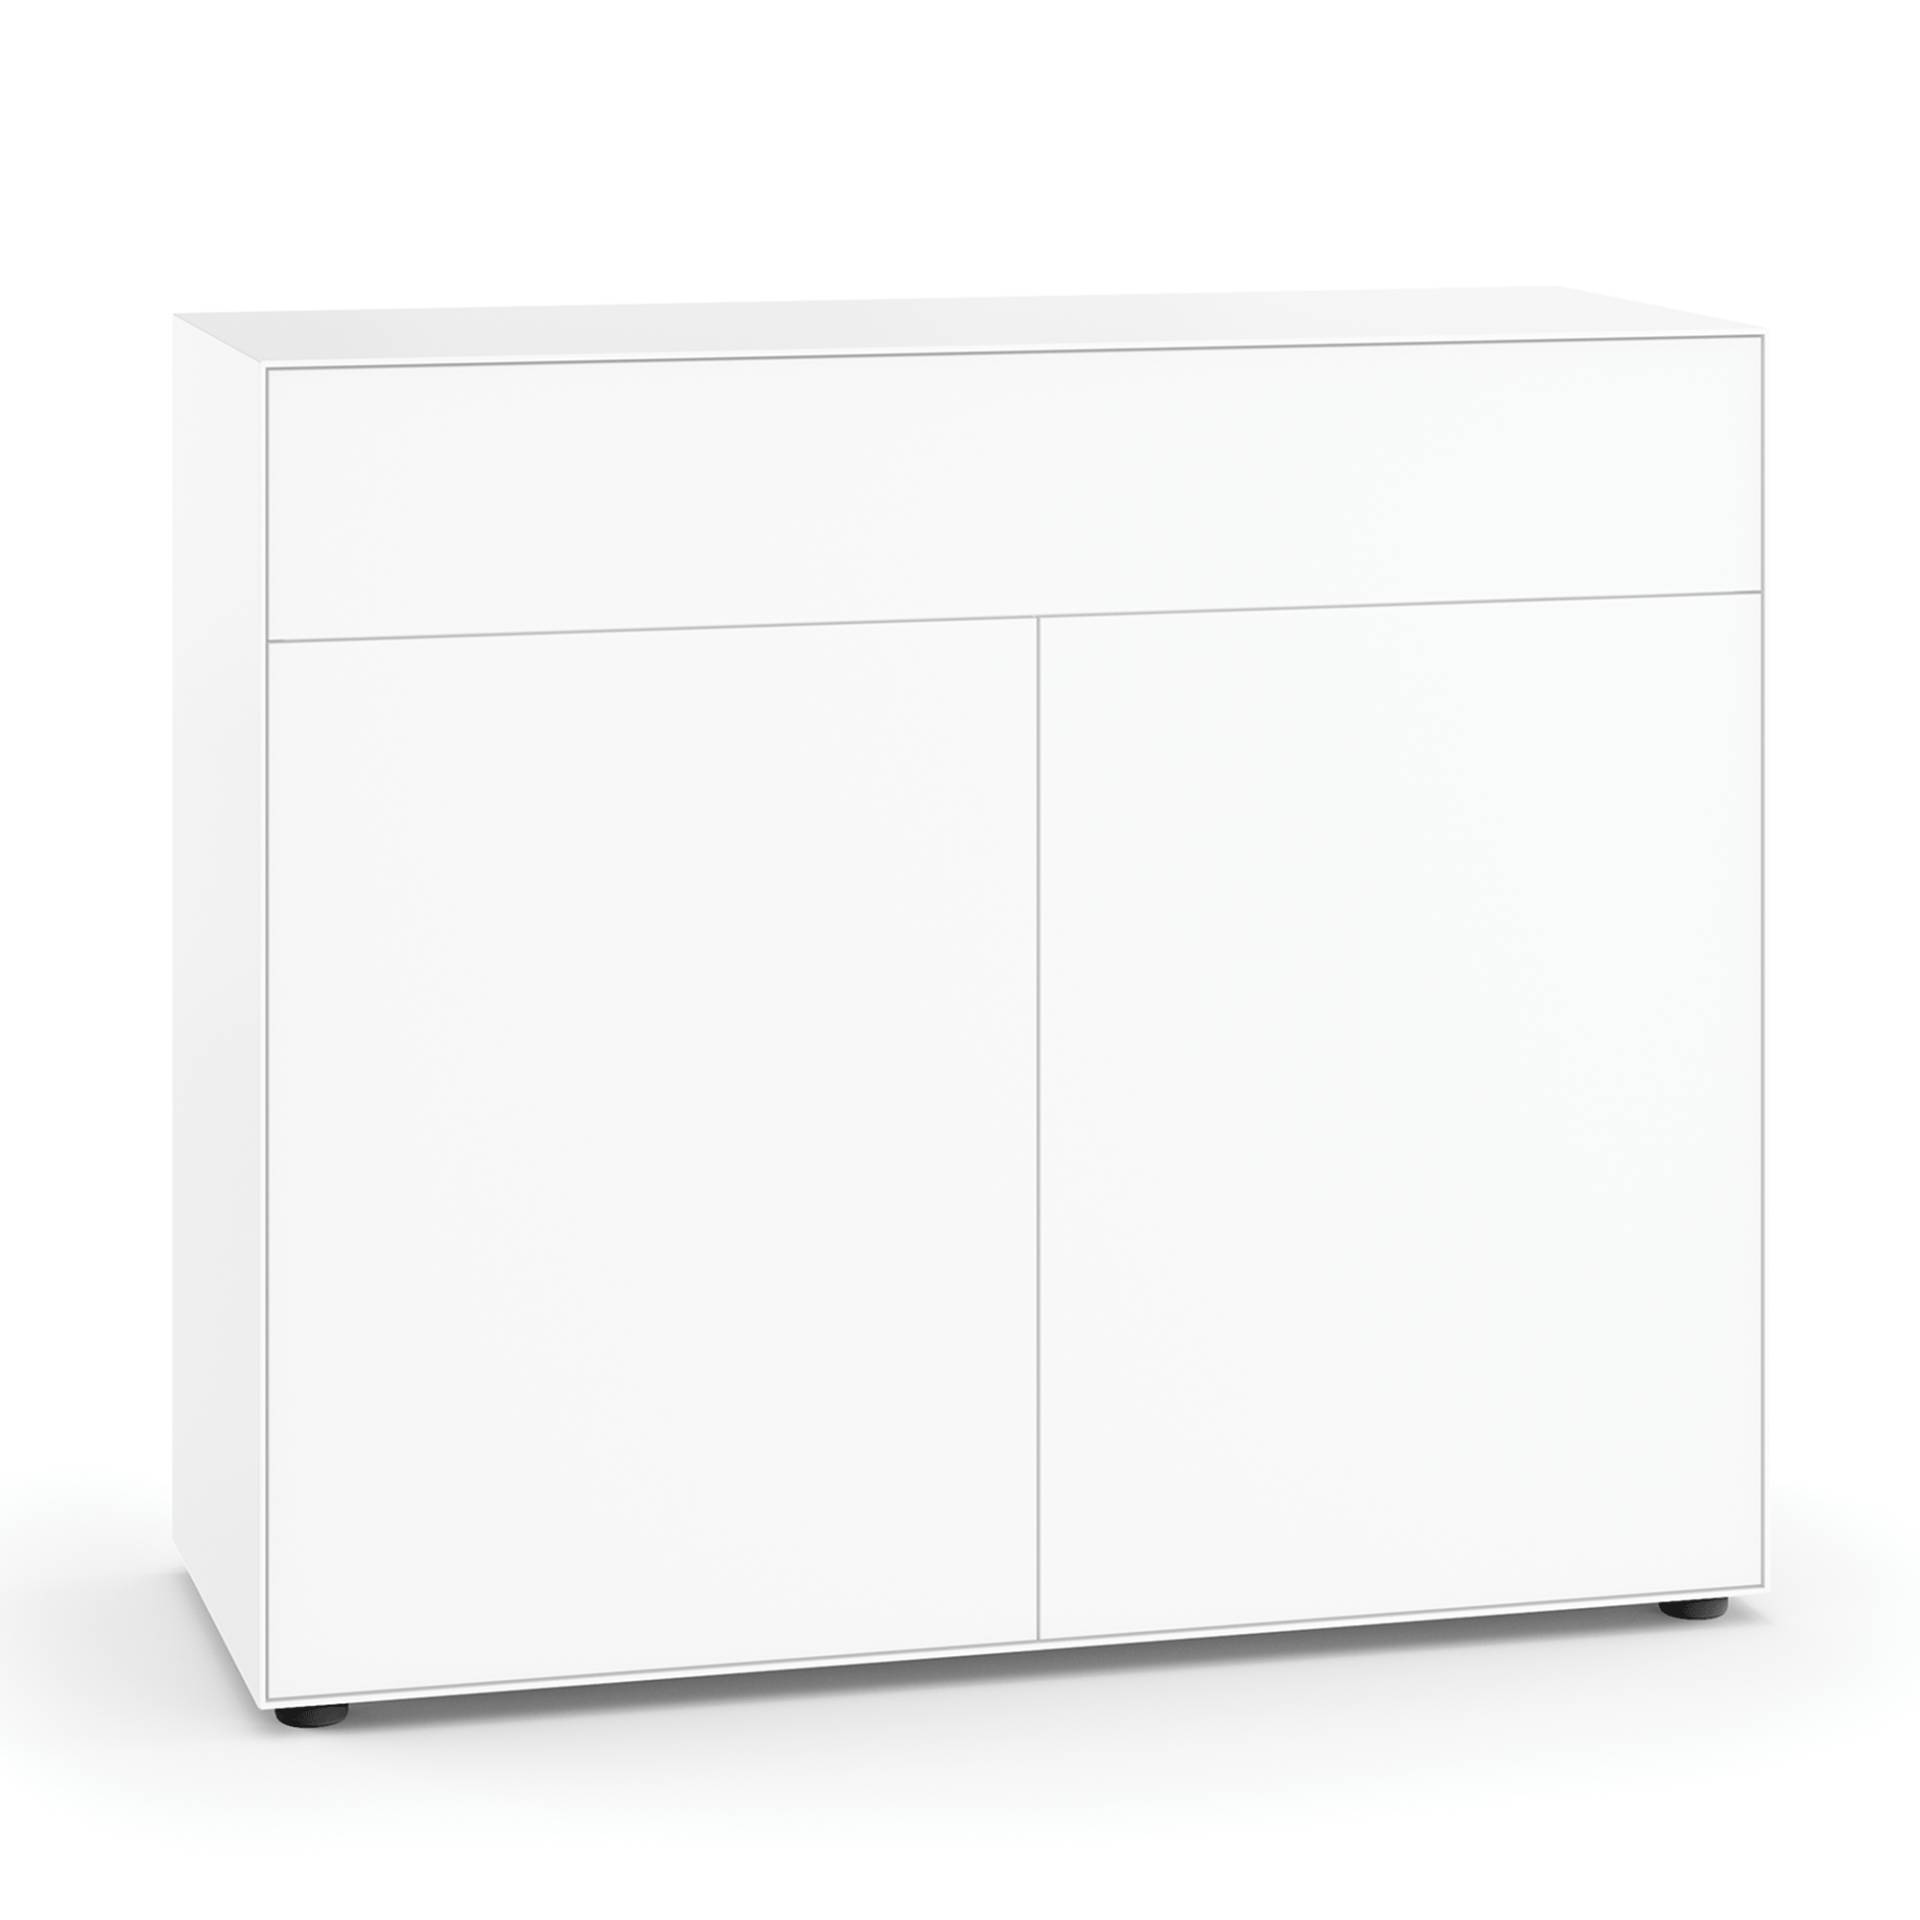 Piure - Nex Pur Box Sideboard mit Tür 120x100x48cm - weiß RAL 9016/MDF matt lackiert/BxHxT 120x100x48cm/mit Gleitfüße von Piure